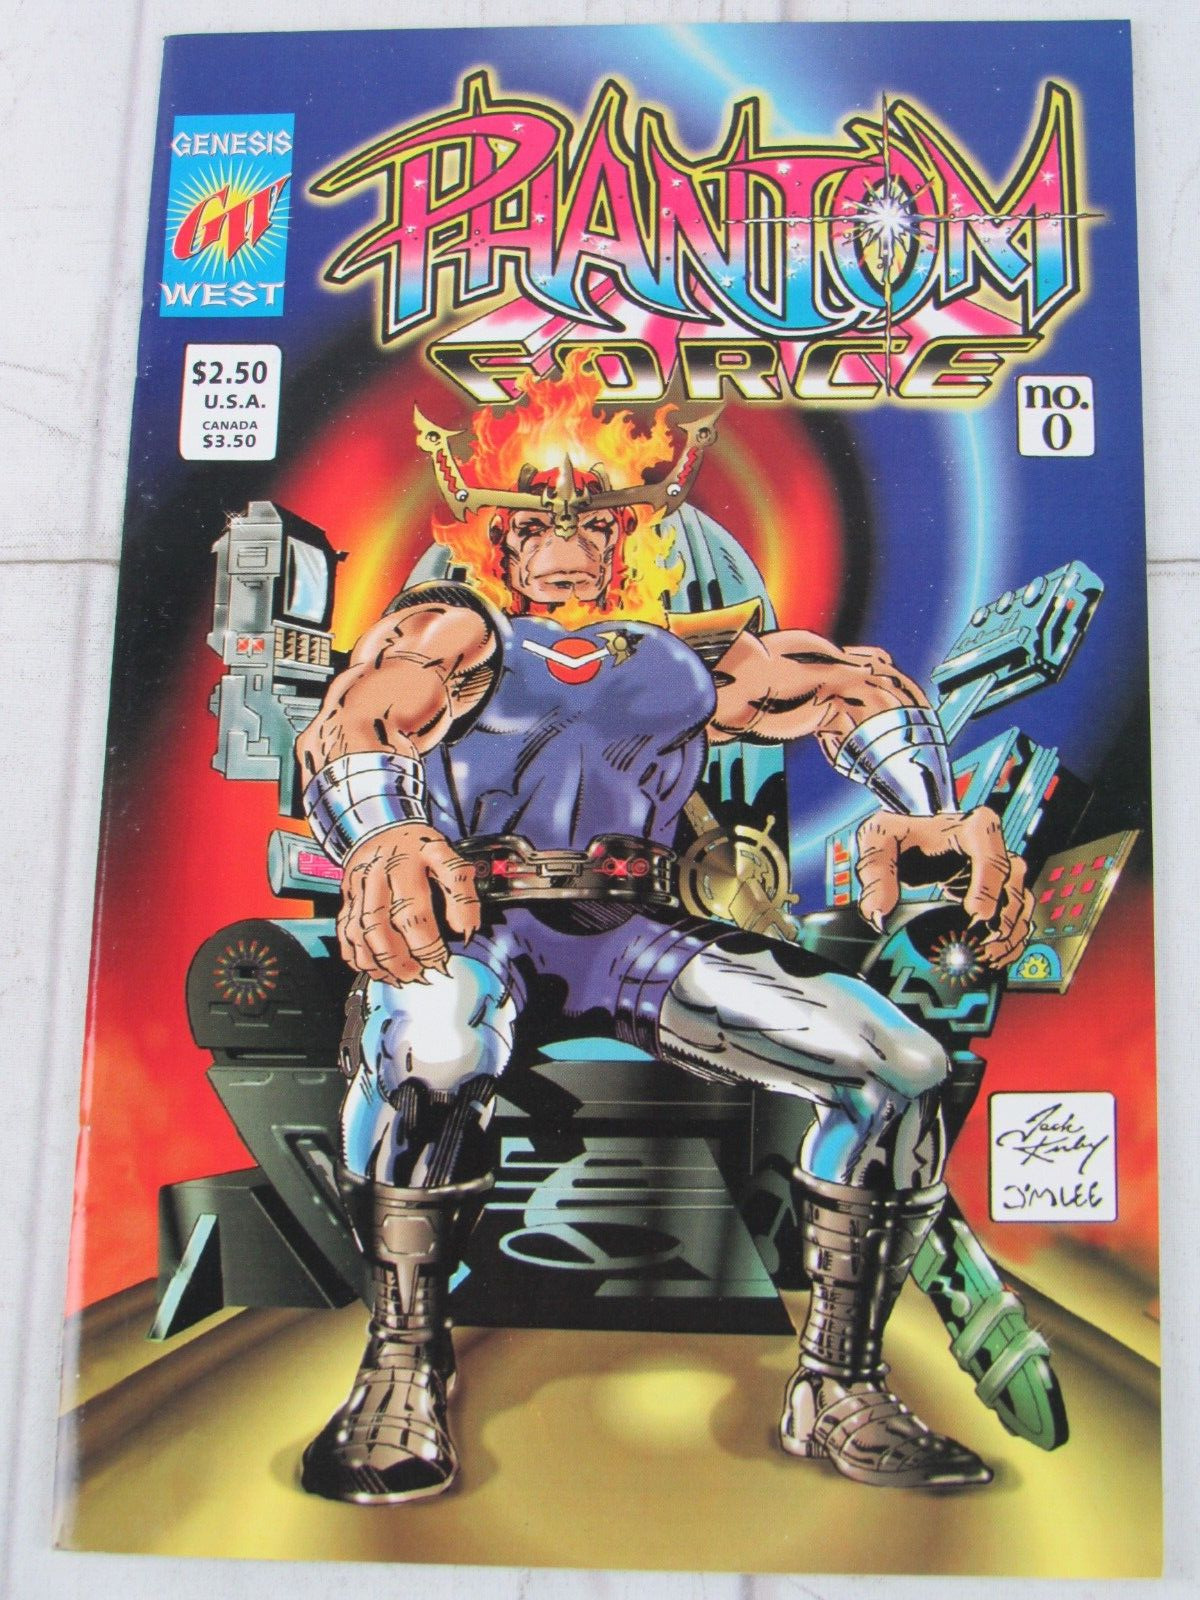 Phantom Force #0 Mar. 1994 Genesis West